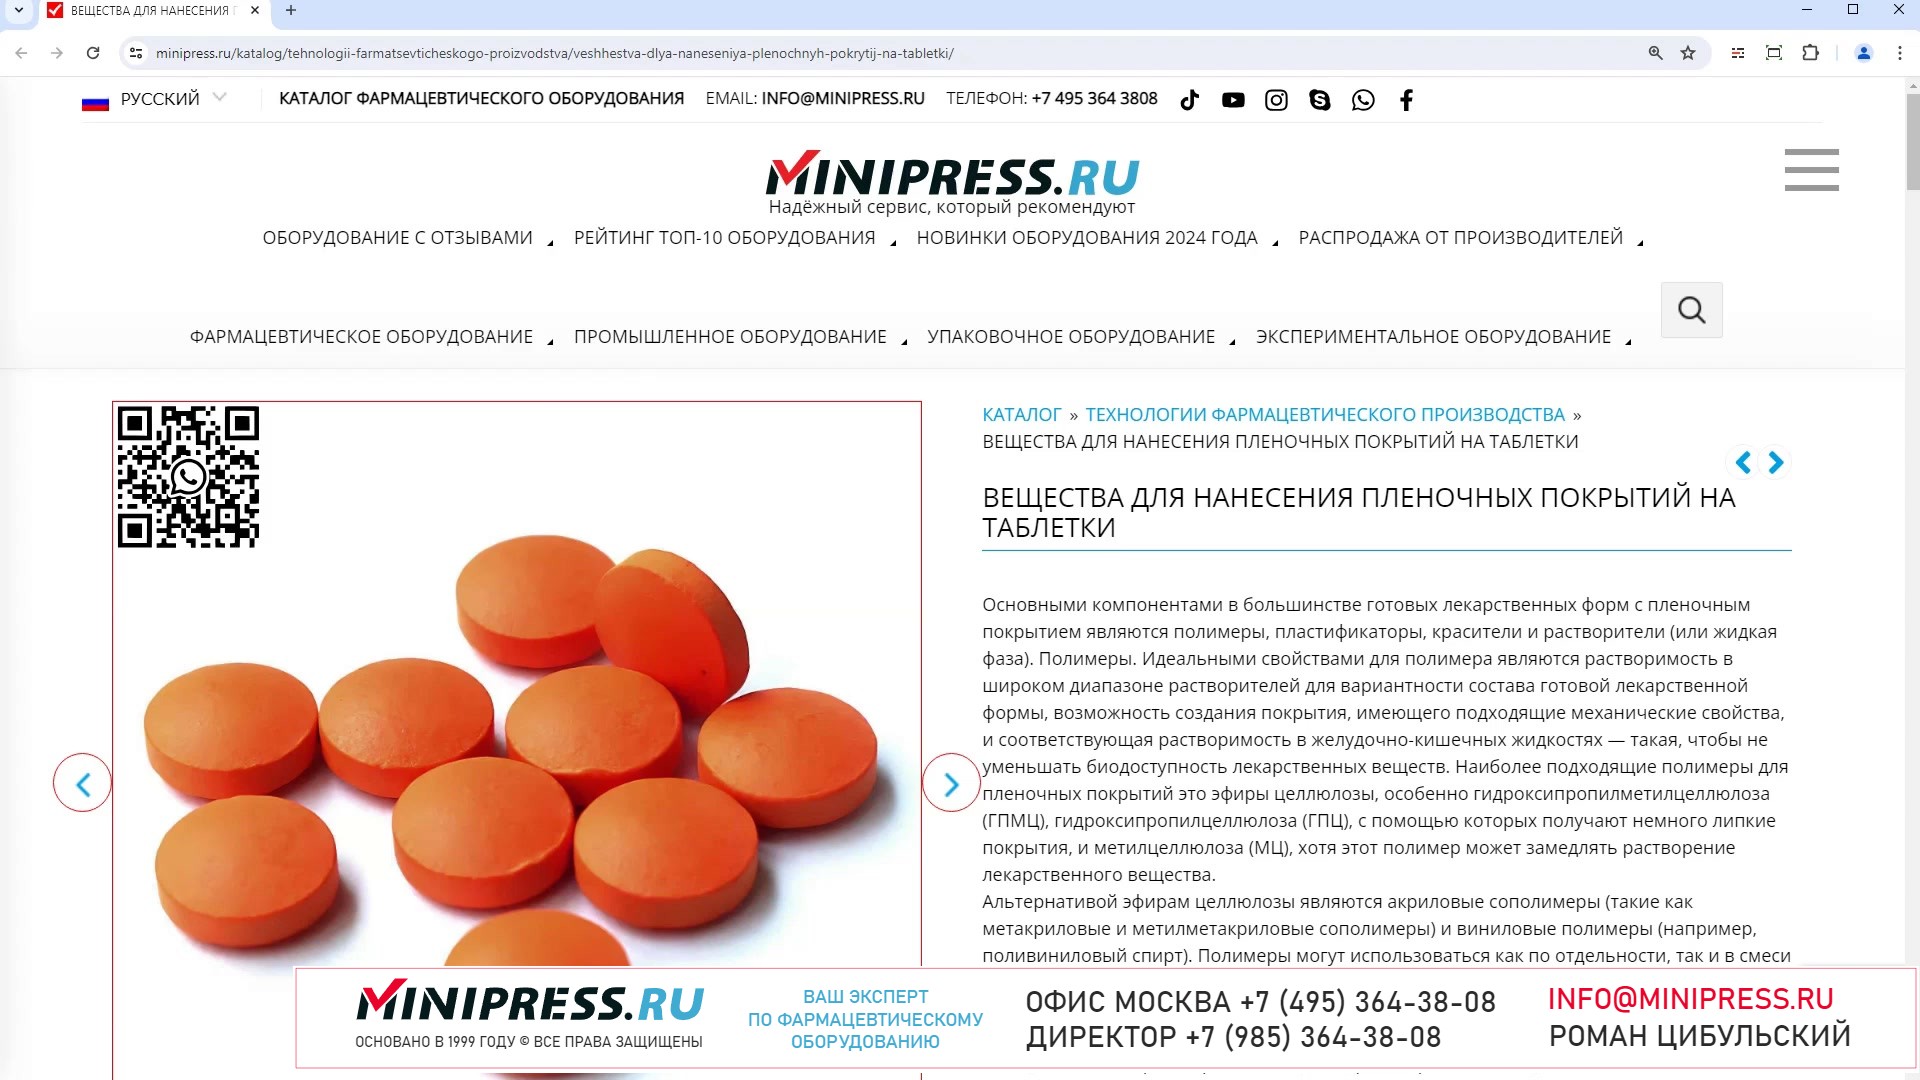 Minipress.ru Вещества для нанесения пленочных покрытий на таблетки